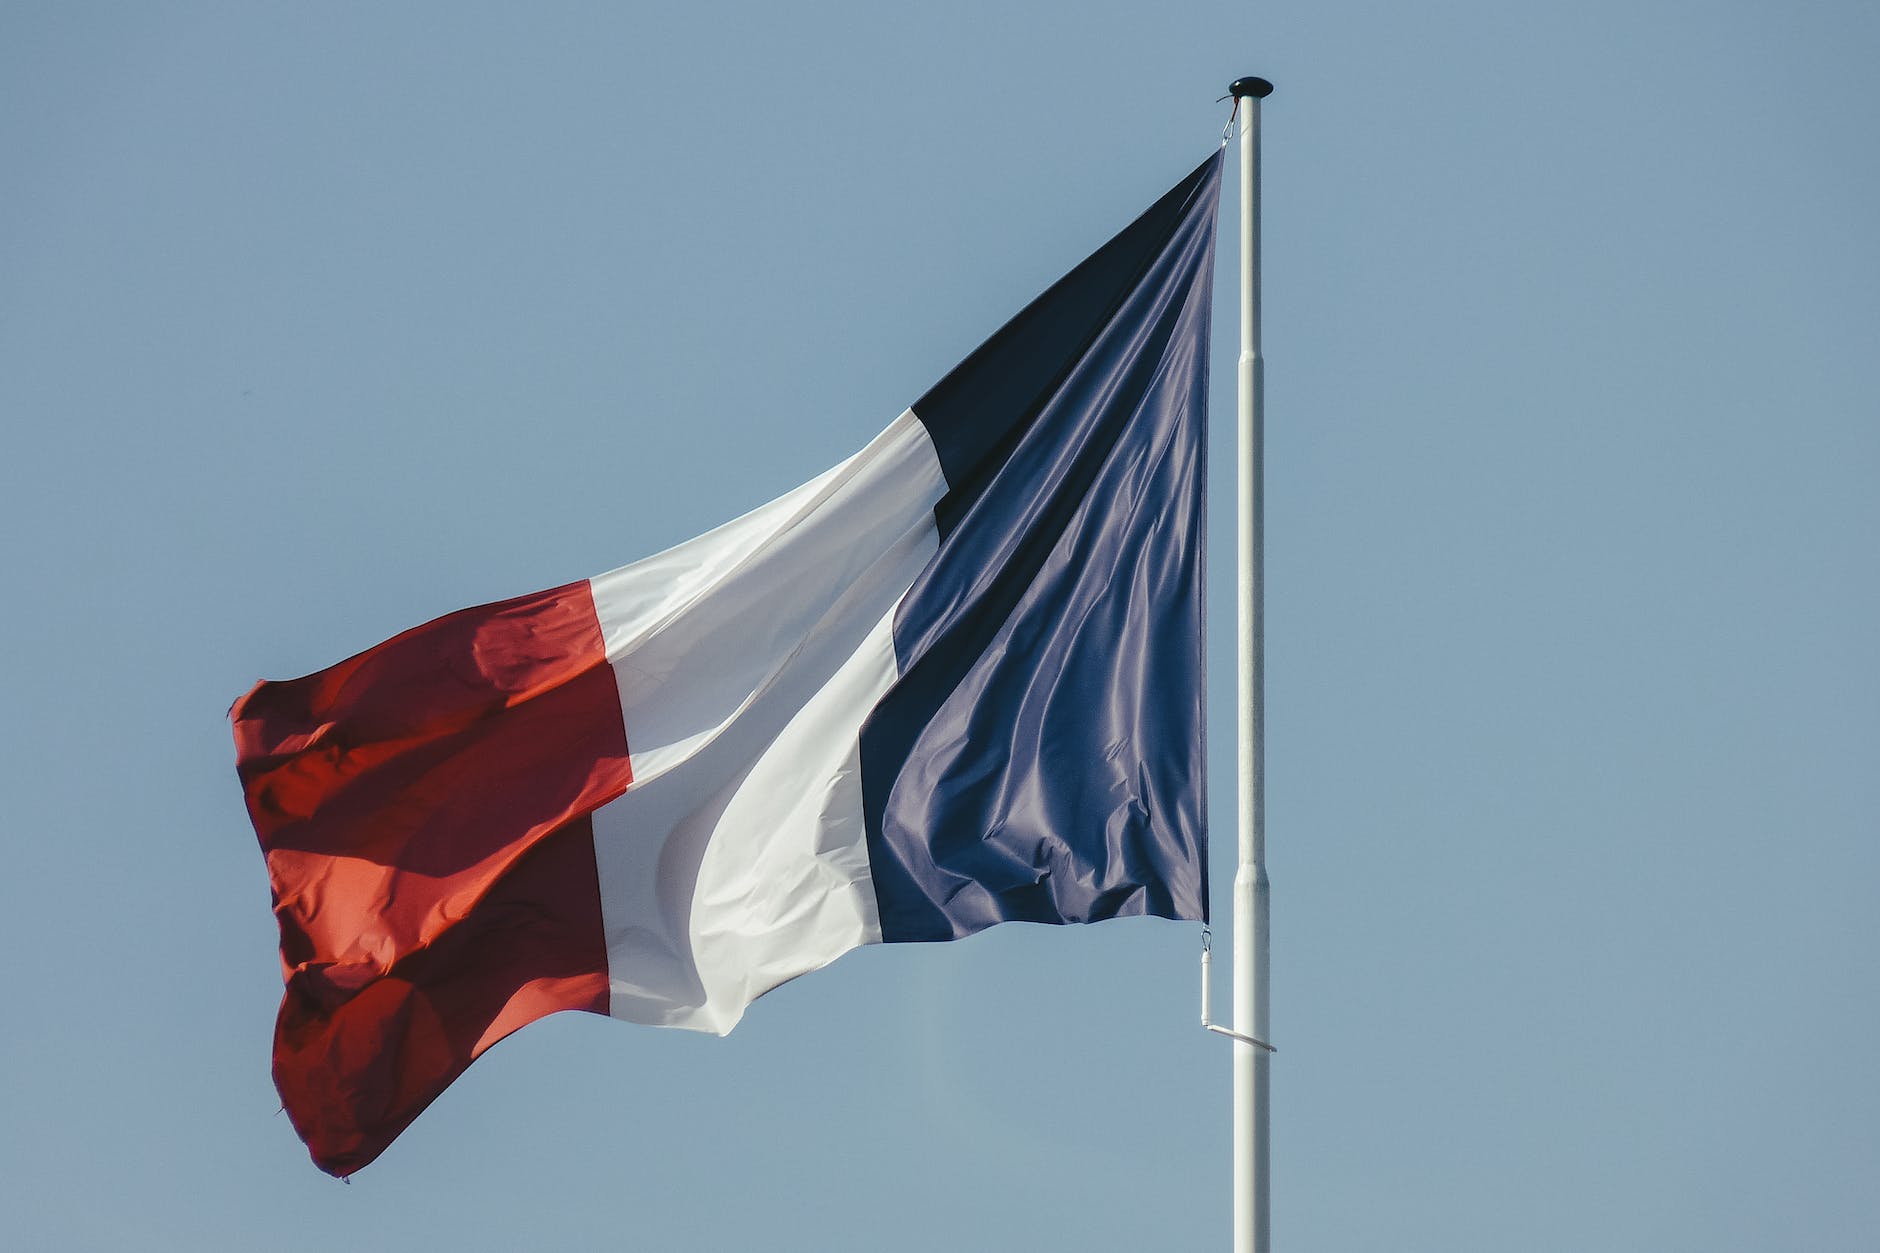 francoska zastava proti modremu nebu